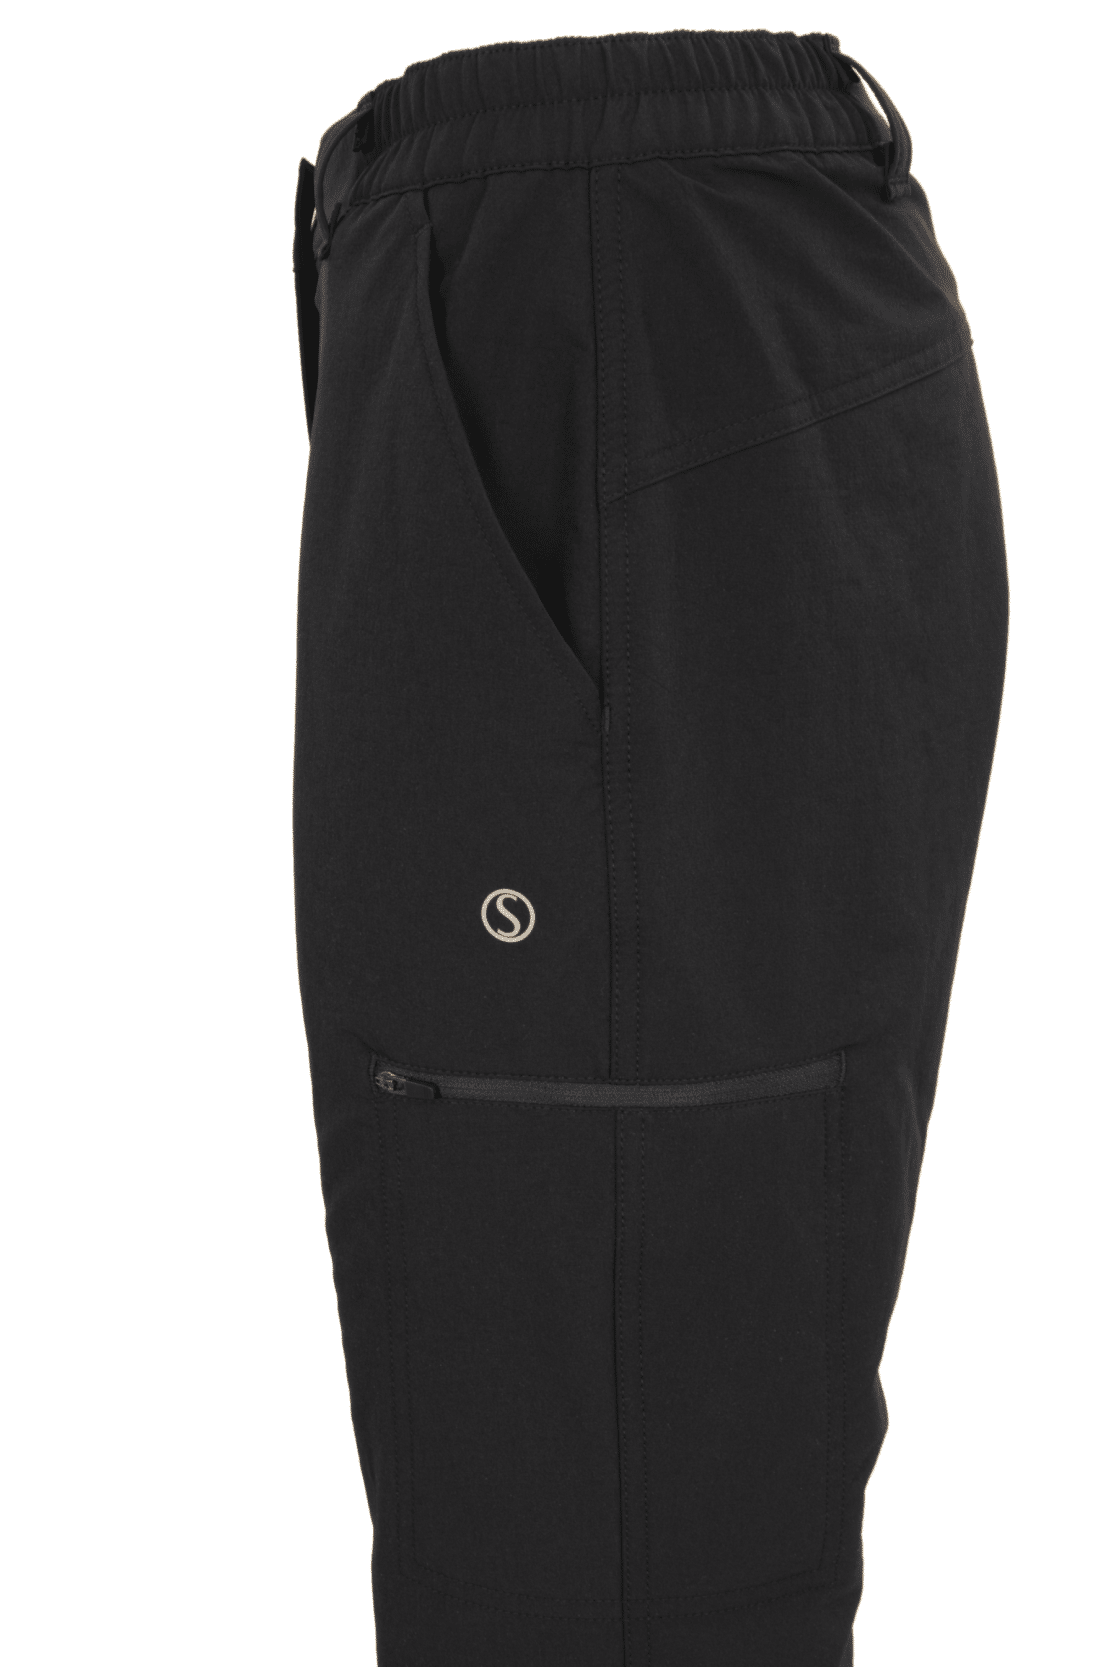 Silverpoint Womens Braemar Waterproof Trousers Black